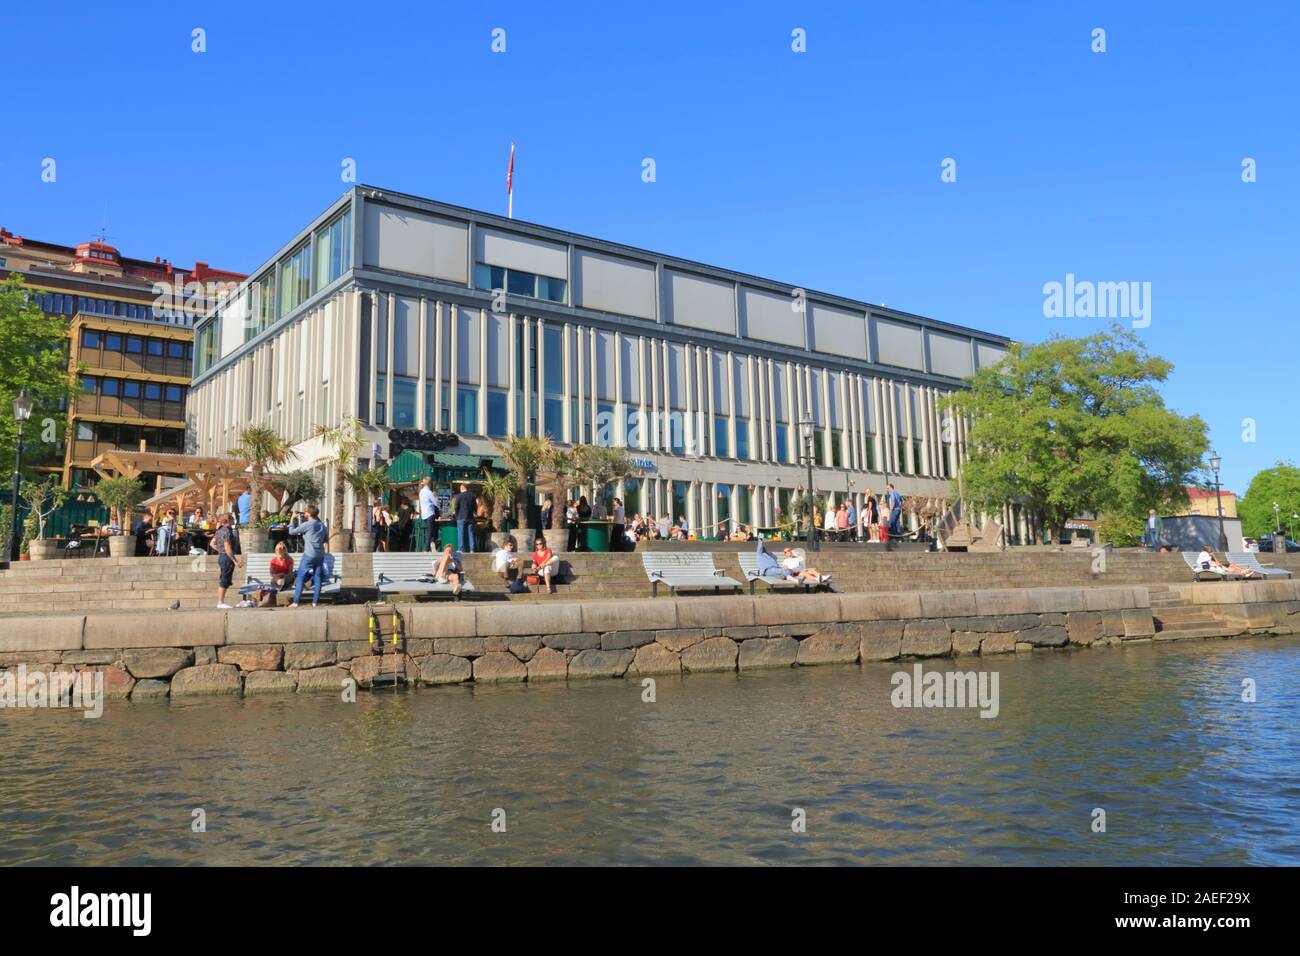 Persone potrete crogiolarvi al sole accanto a un canale esterno Boulebar Rosenlund a Gothenburg, Svezia, durante l'estate. Foto Stock